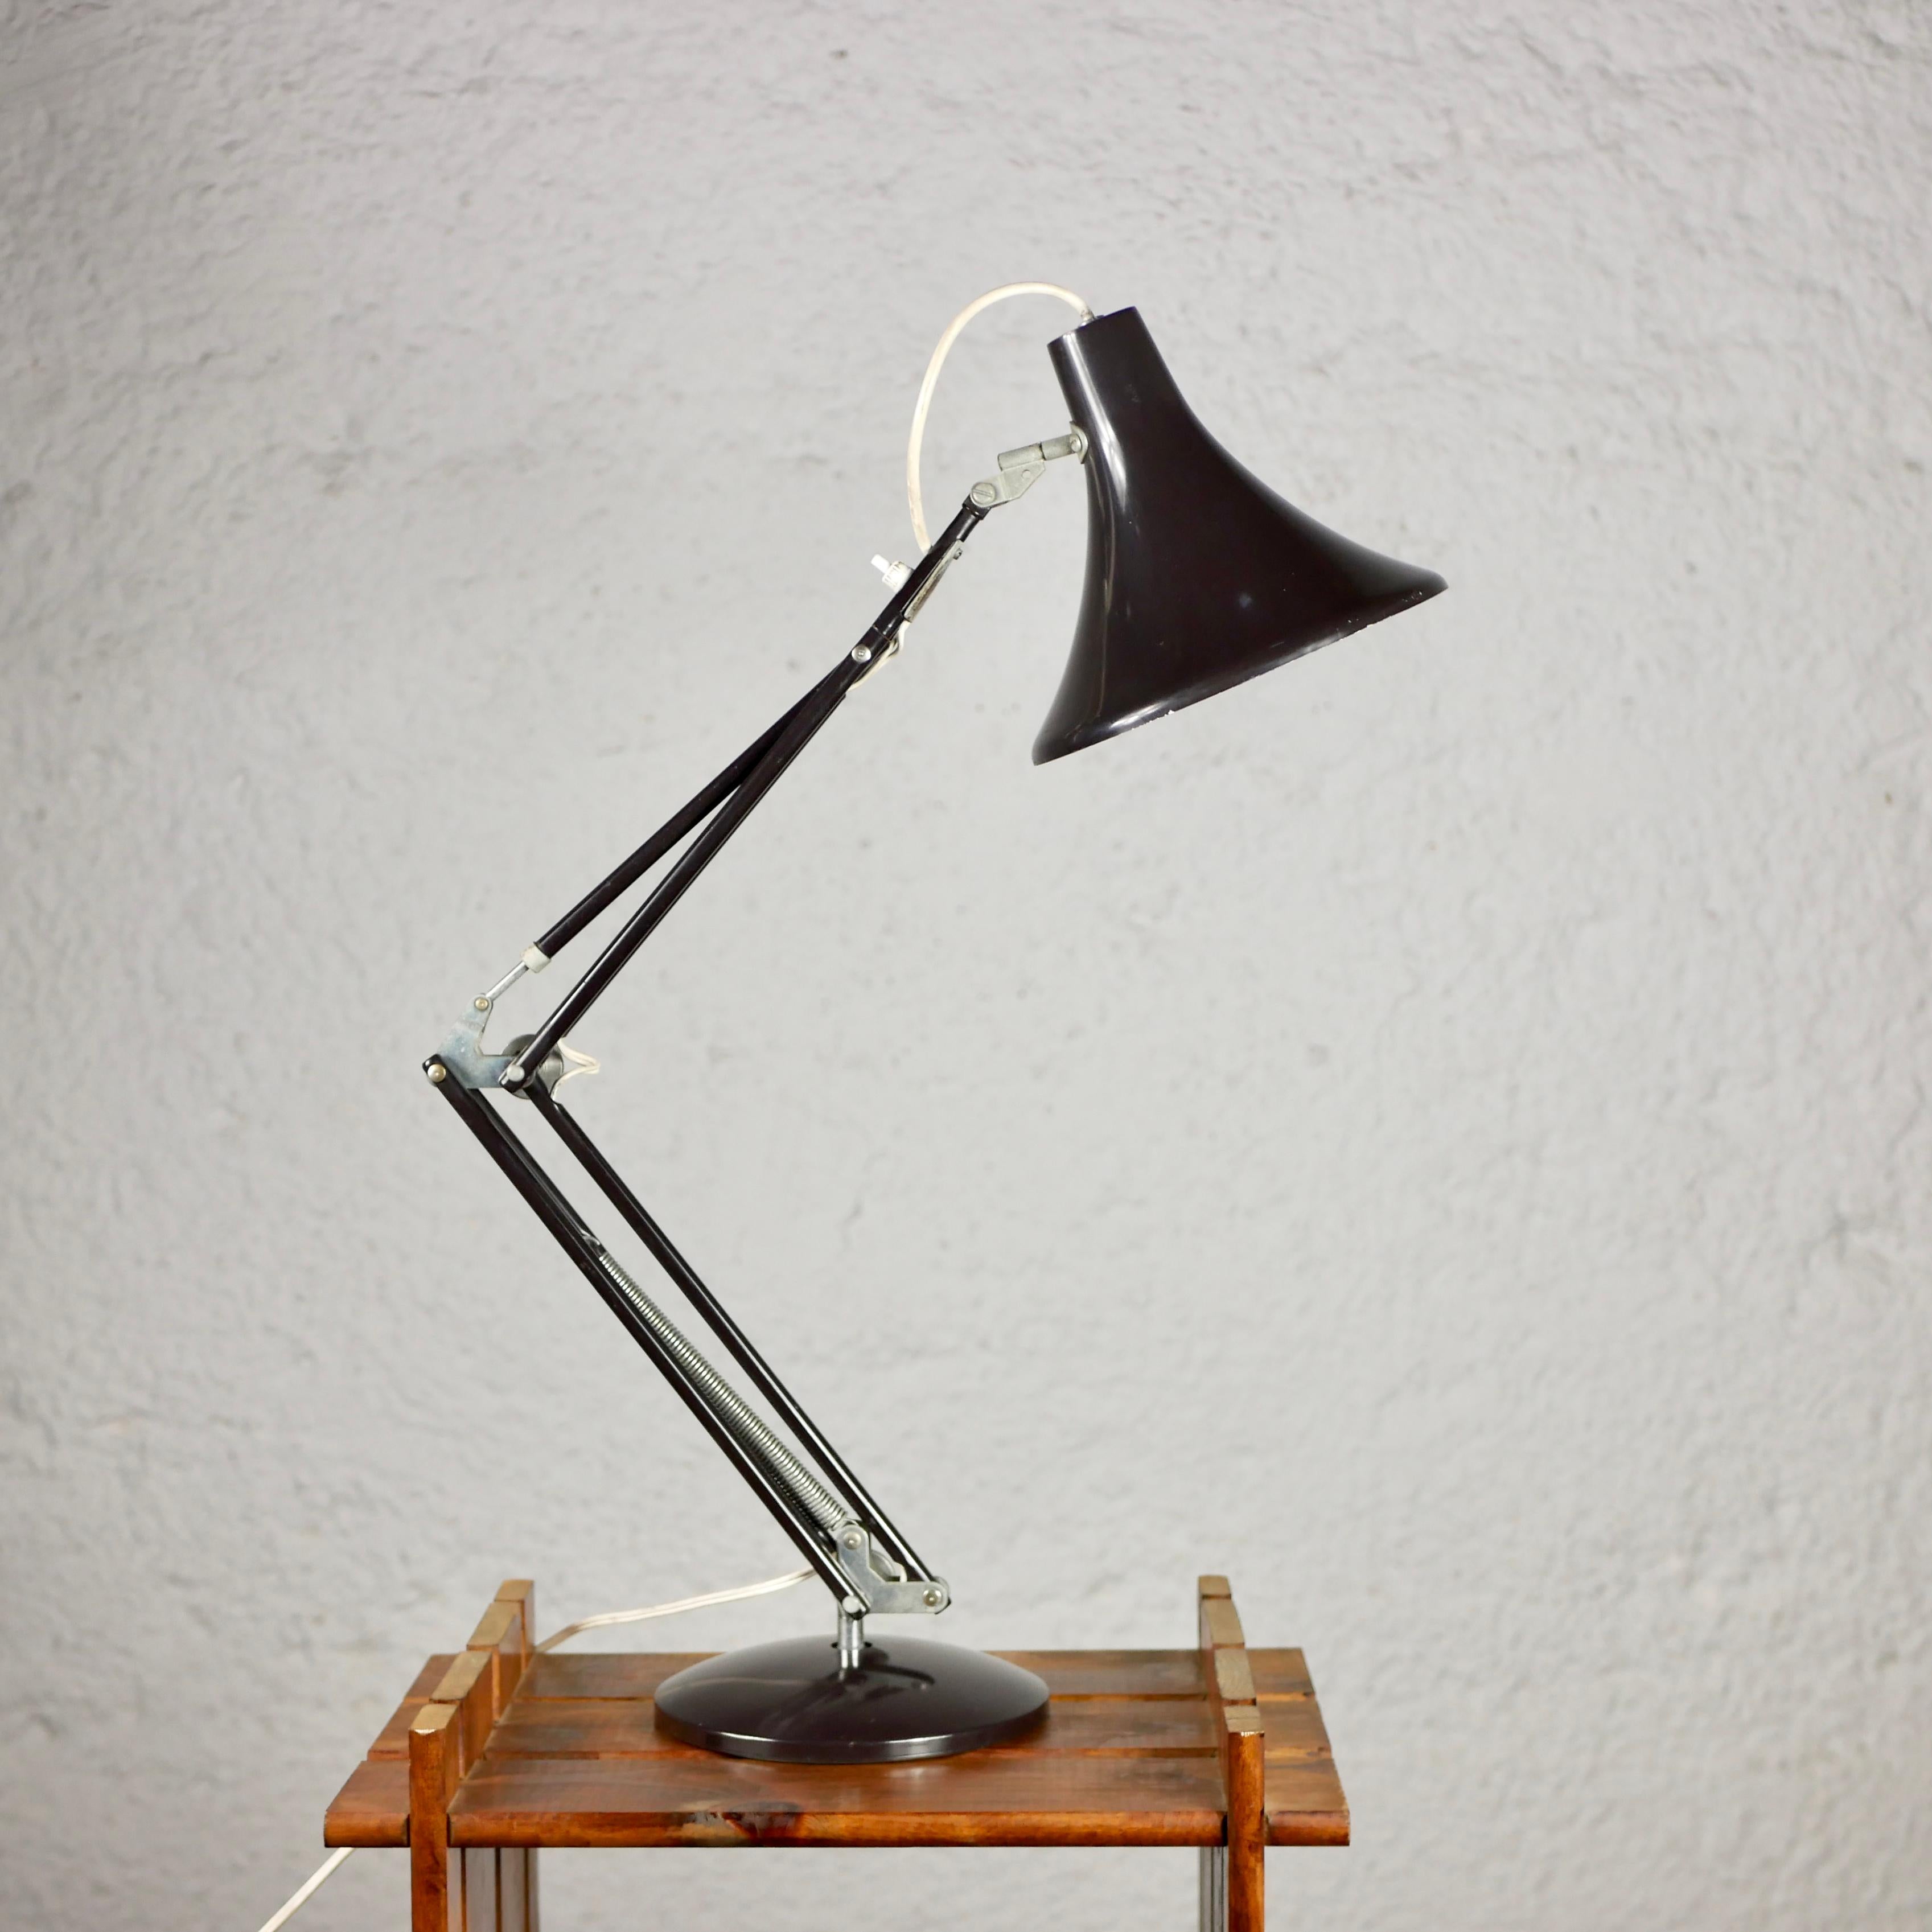 Belle lampe d'architecte classique, très proche de la lampe Luxo en métal laqué brun foncé. Robuste, articulé et pratique. 
Bon état général.
Dimensions : 2 bras de 33cm et 37cm, environ 60cm de hauteur.